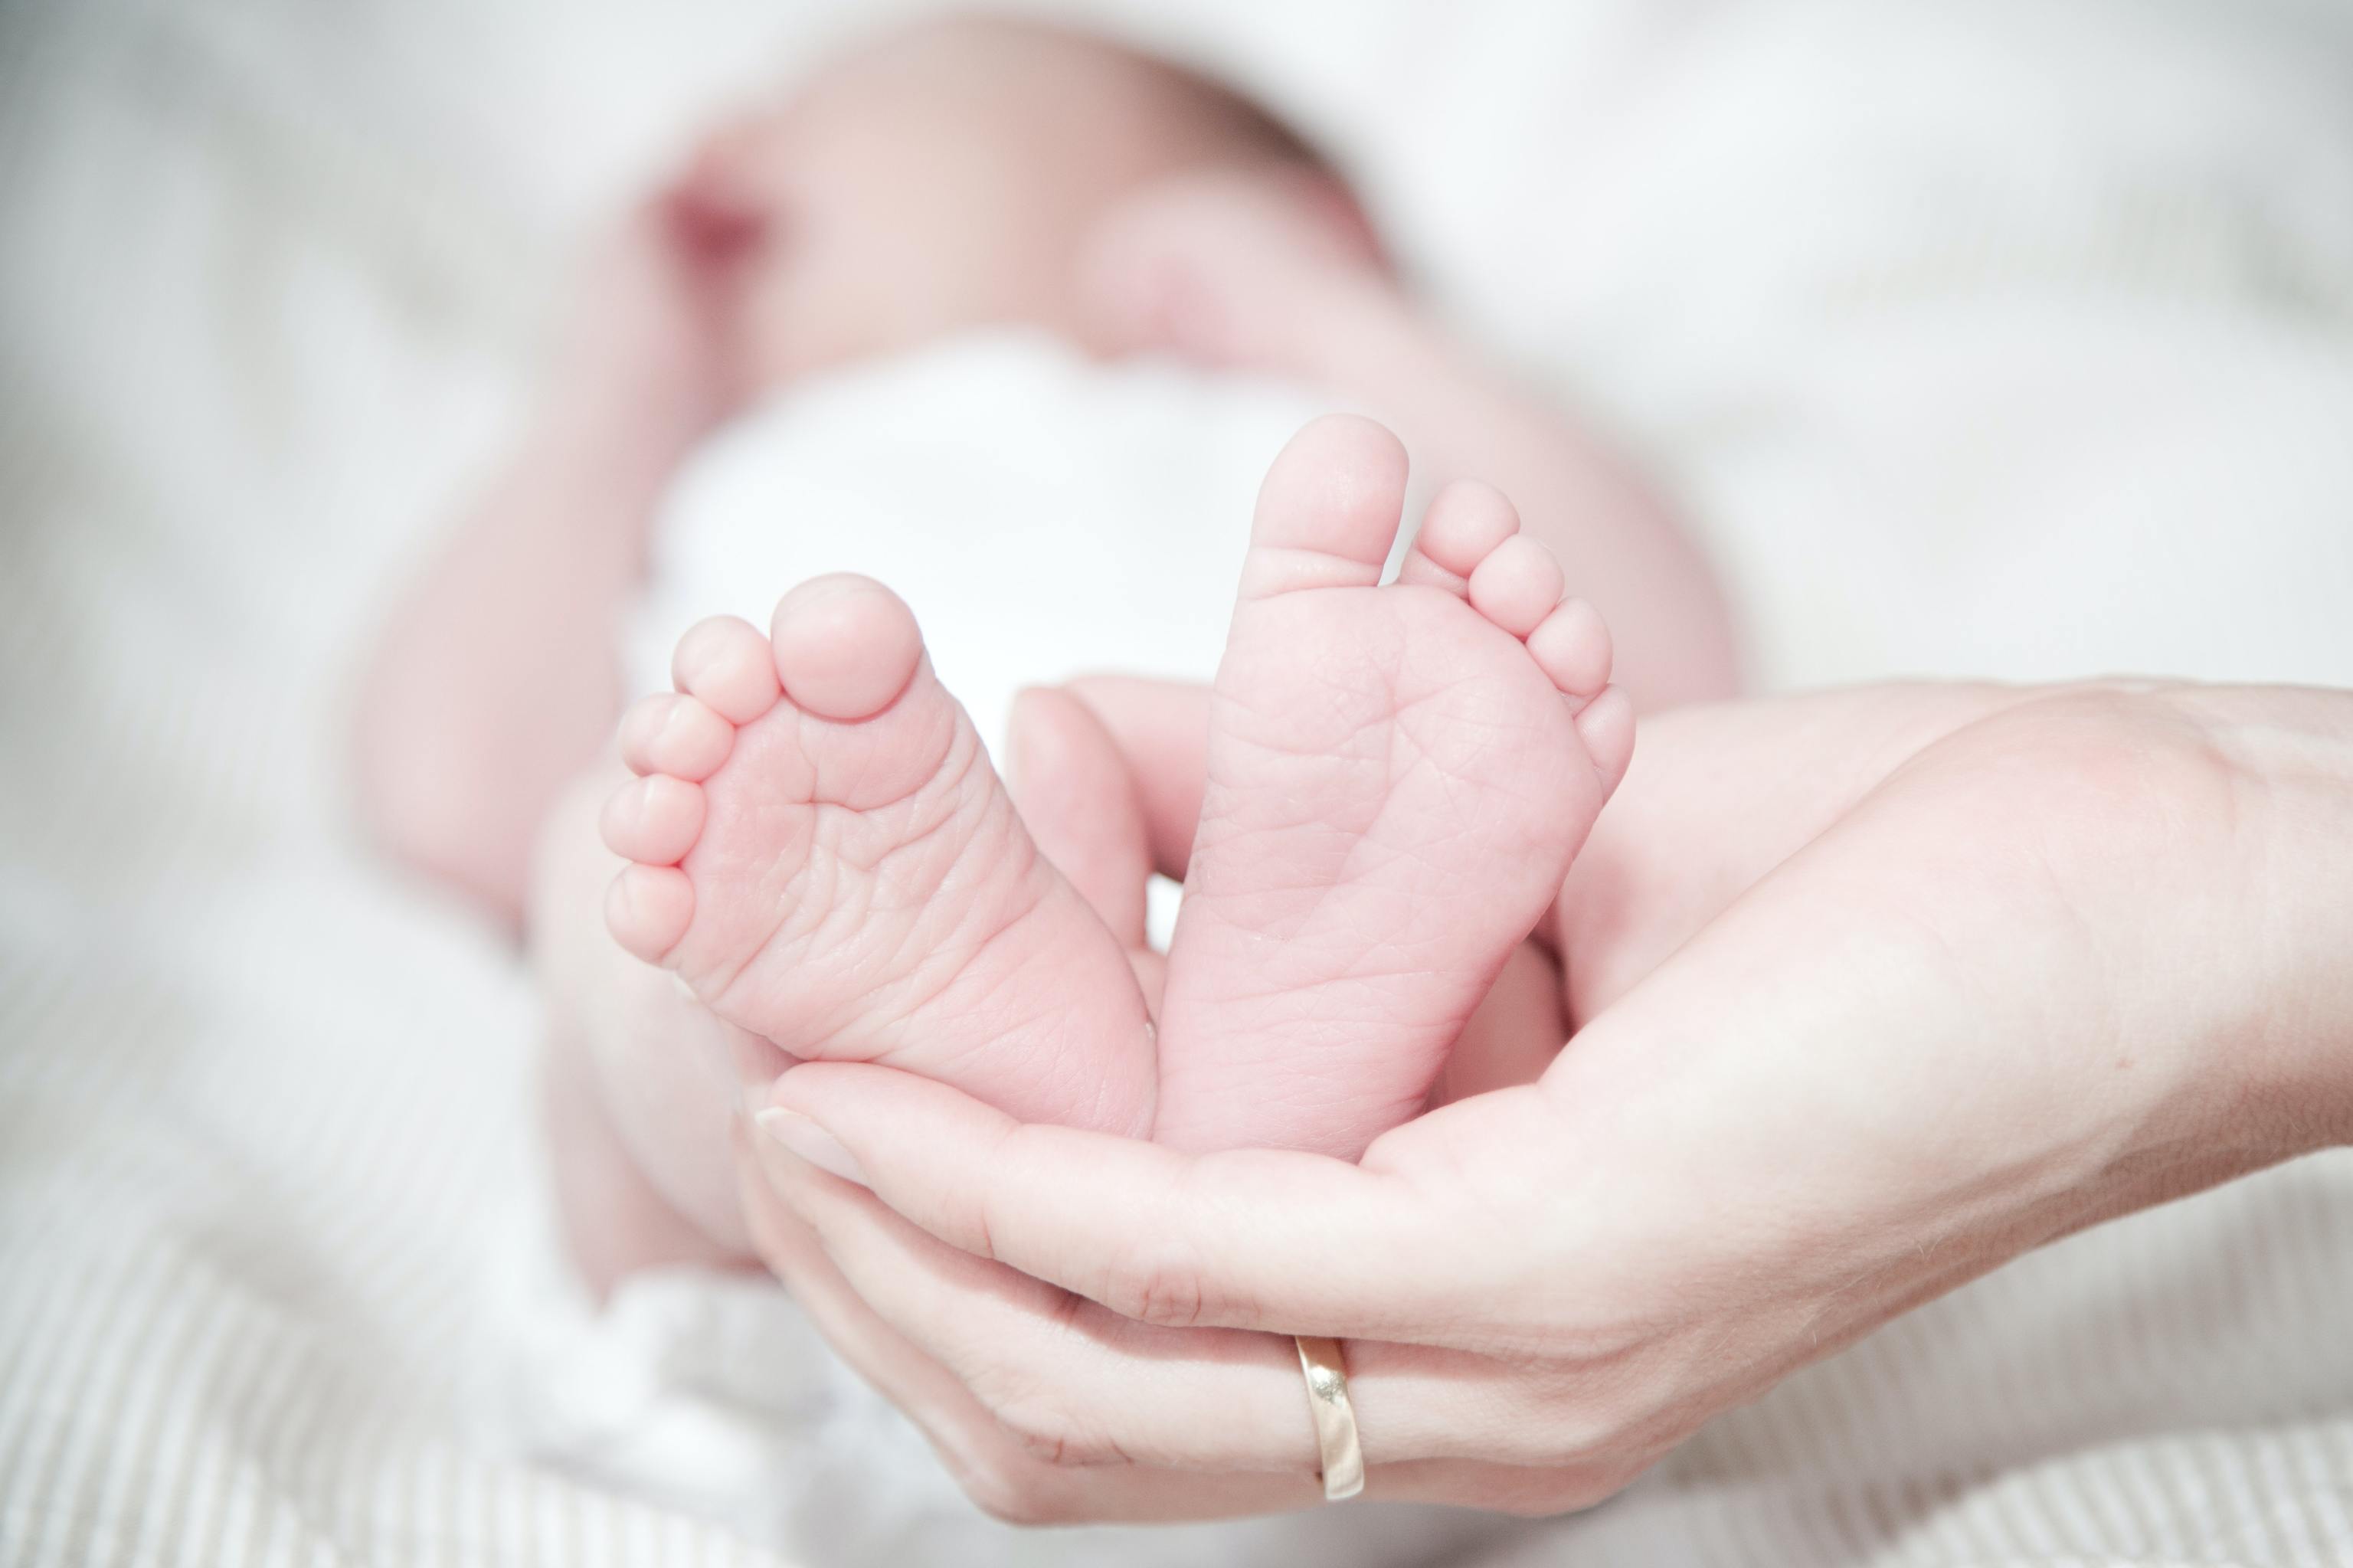 Confesión Cuota de admisión flotante Qué significa soñar con bebés y cuándo ocurre | Vida Saludable